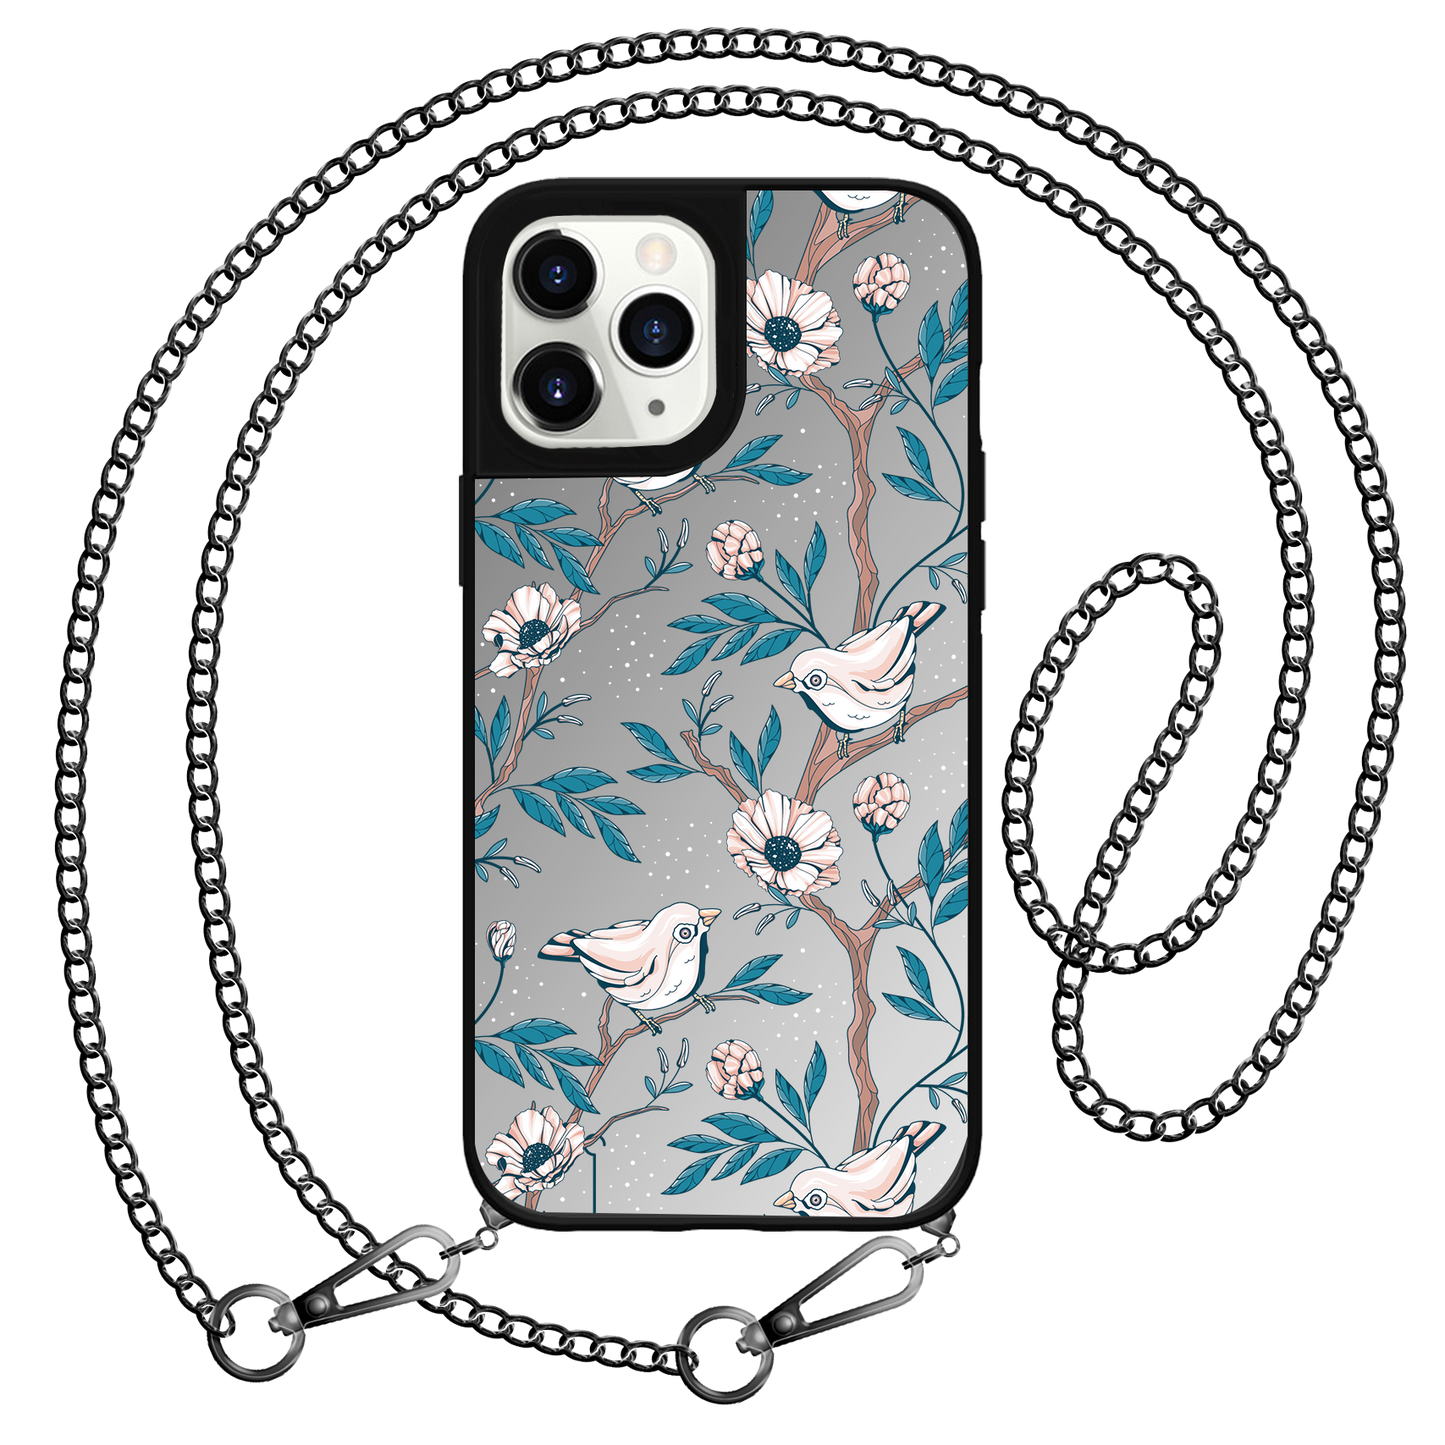 iPhone Mirror Grip Case - Lovebird 3.0